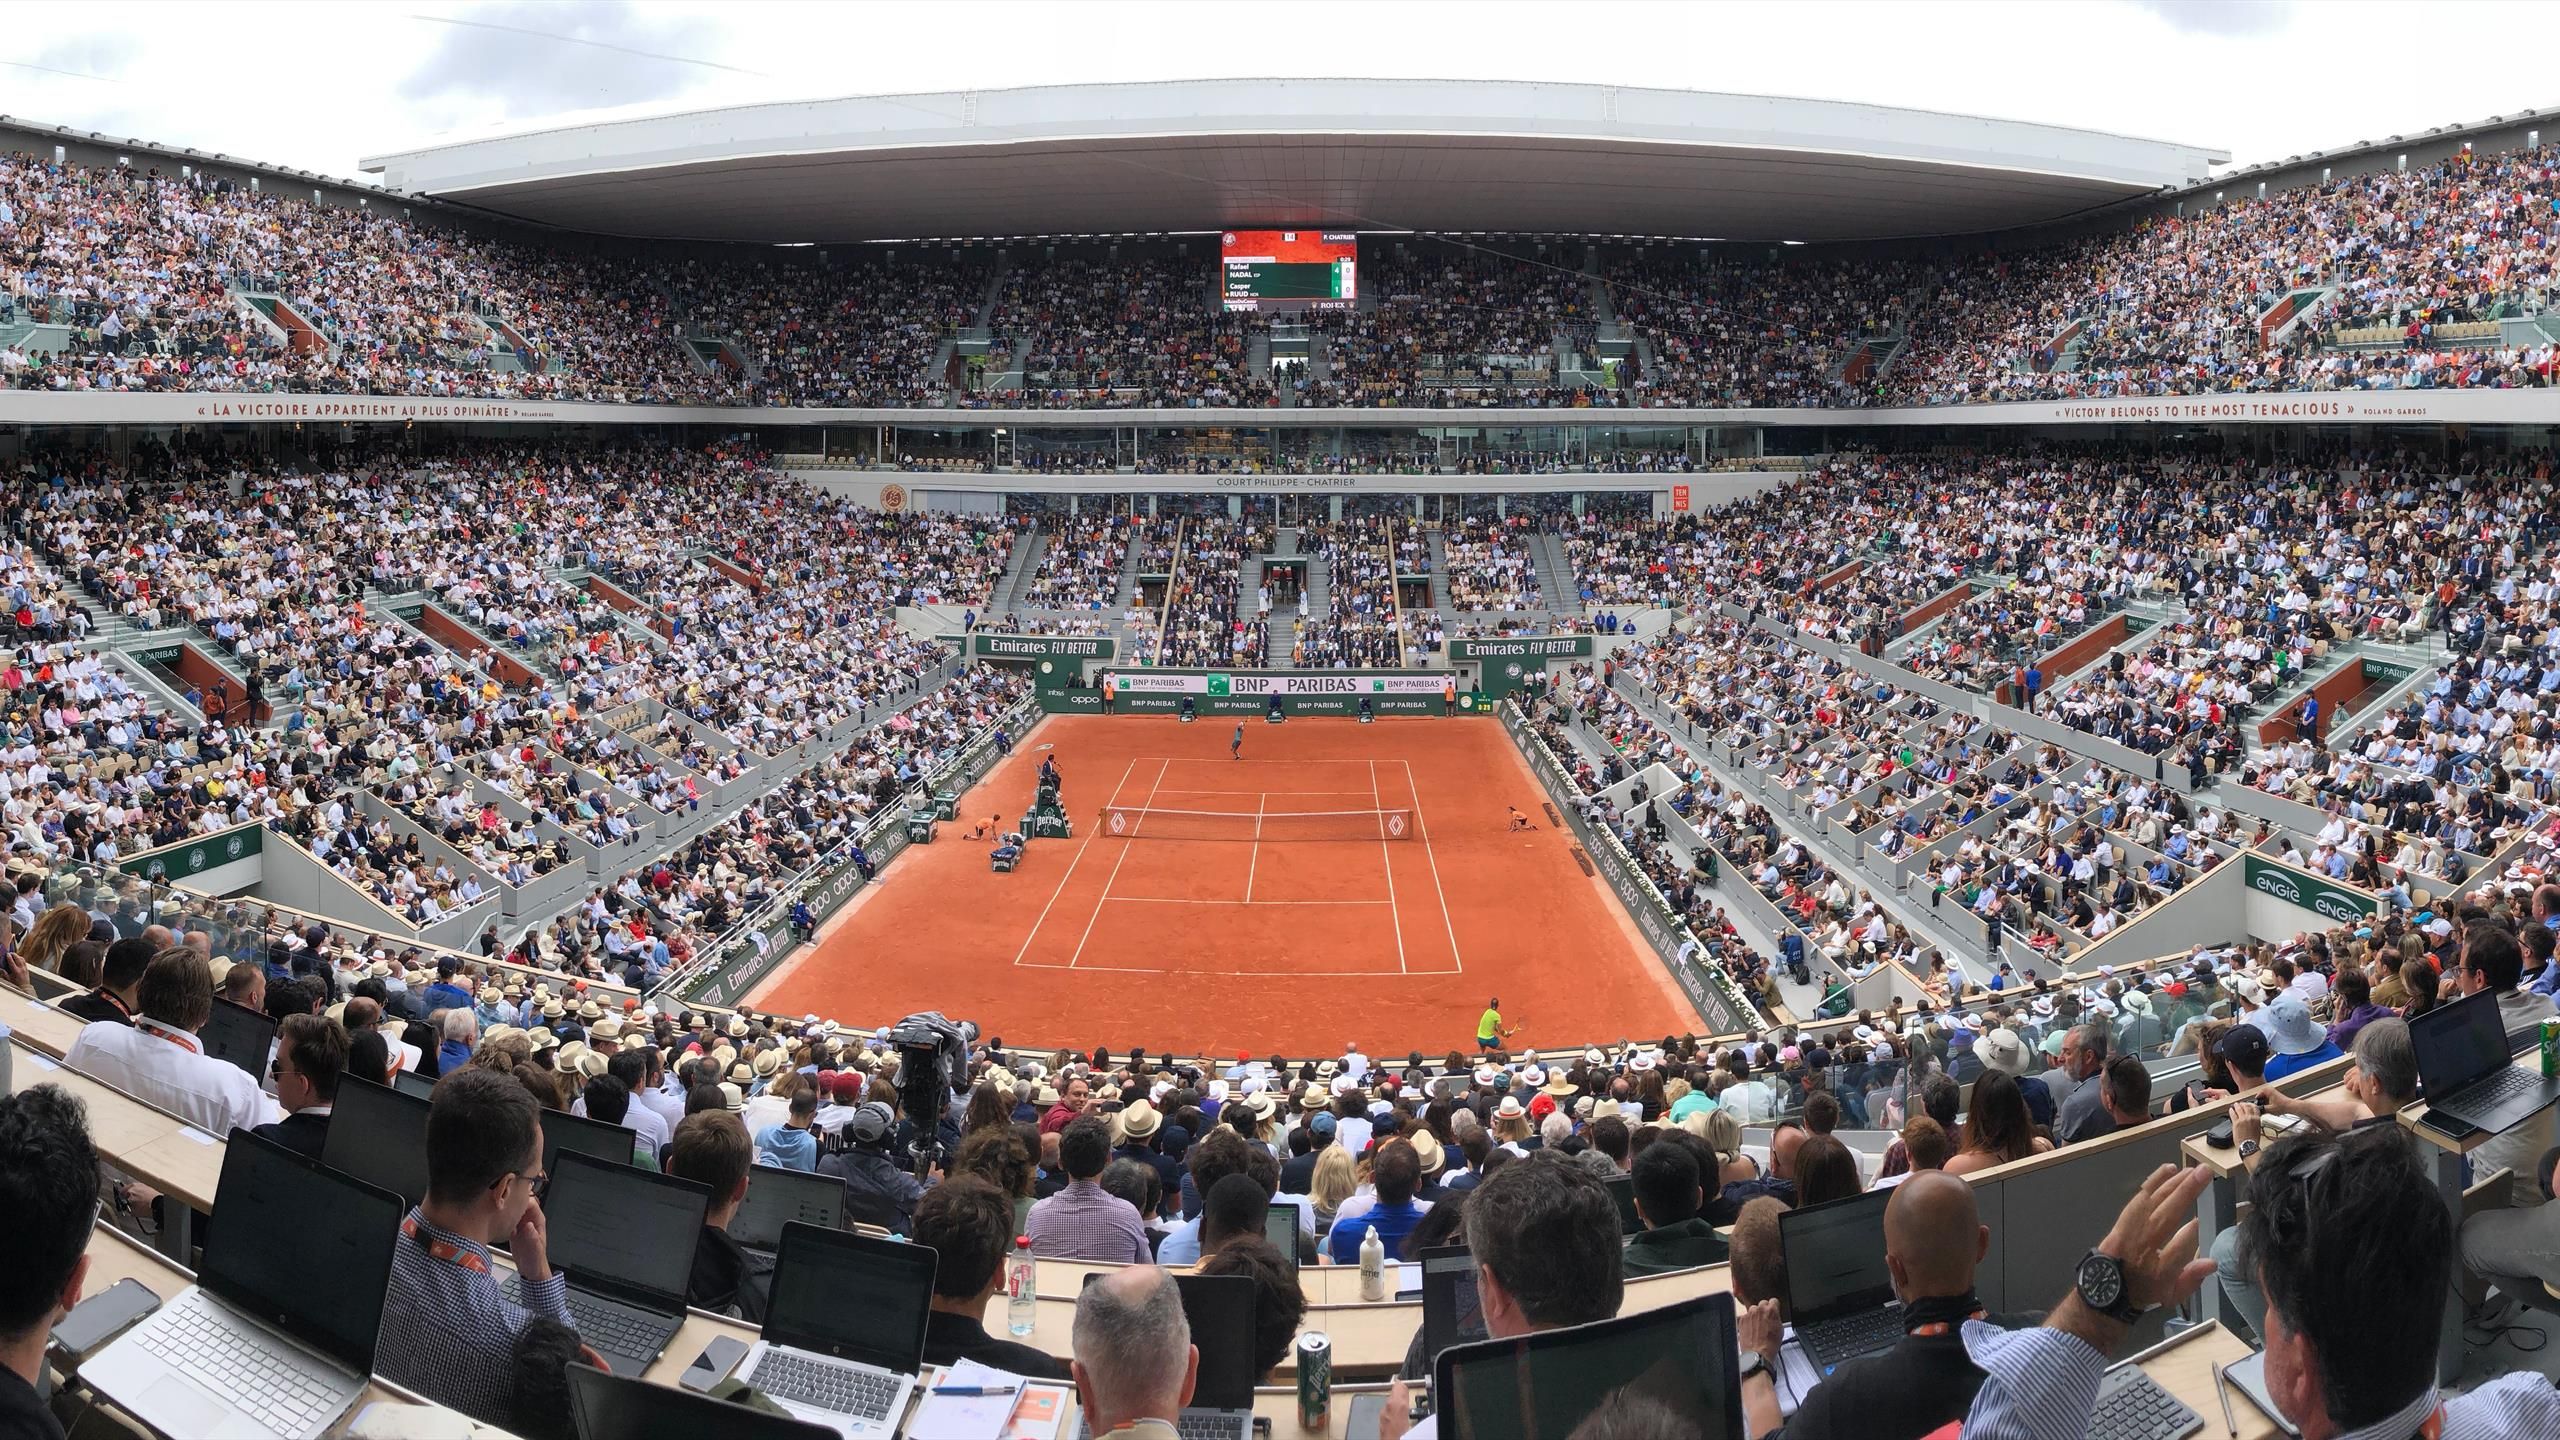 Roland Garros sediará o tênis nos Jogos Olímpicos de 2024 em Paris - ESPN